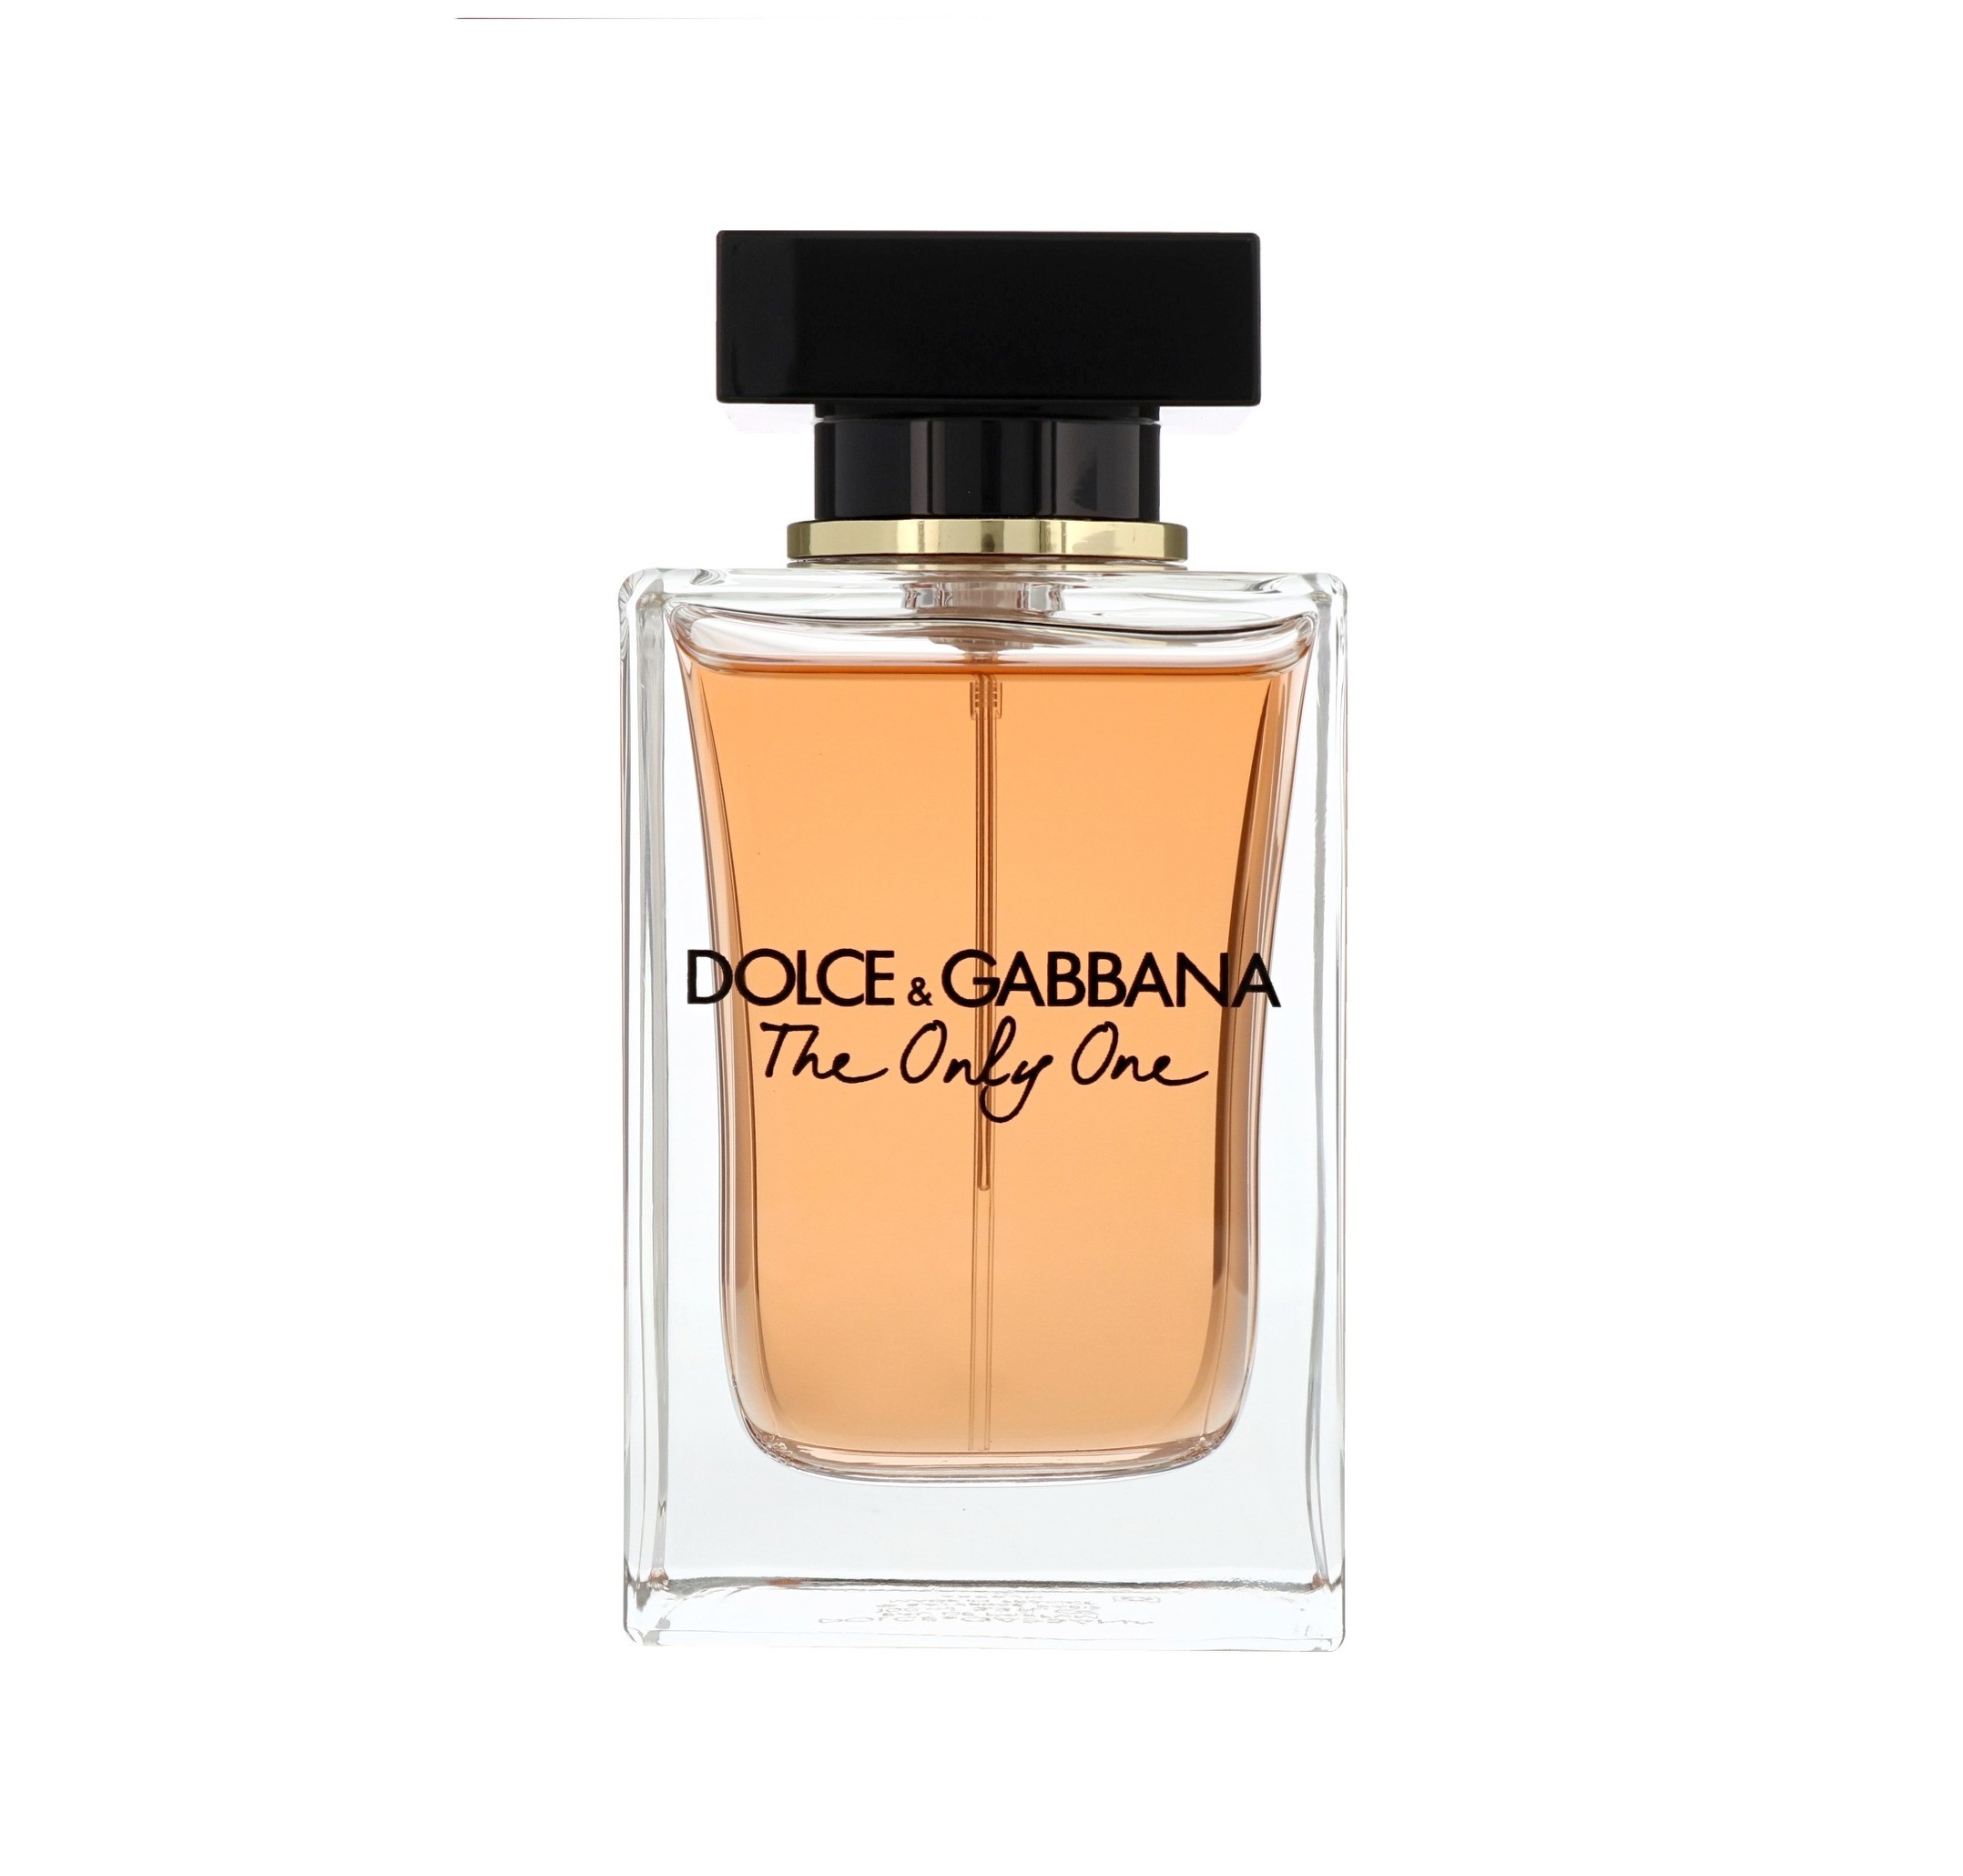 Nước hoa The Only One Dolce & Gabbana 100ml - Thu Hút, Gợi Cảm